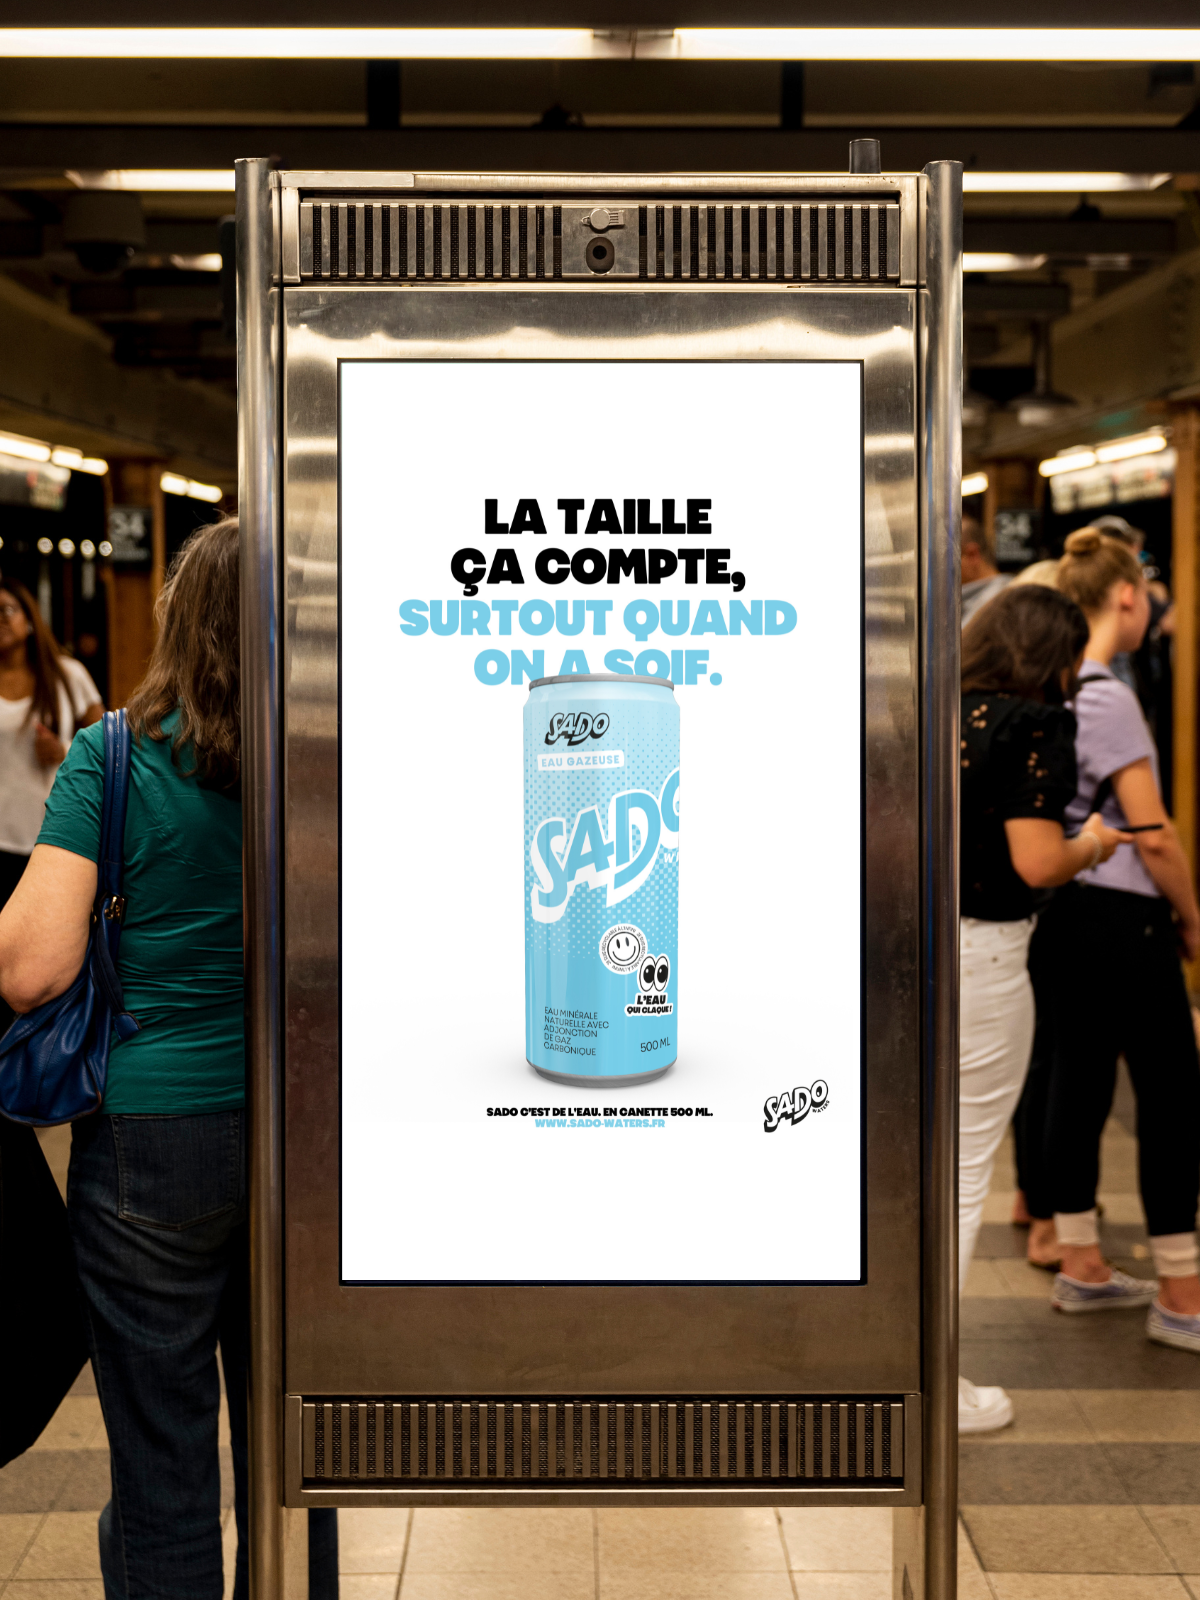 Campagne d'affichage métro La taille ça compte surtout quand on a soif. Eau minérale gazeuse en canette 500 ml